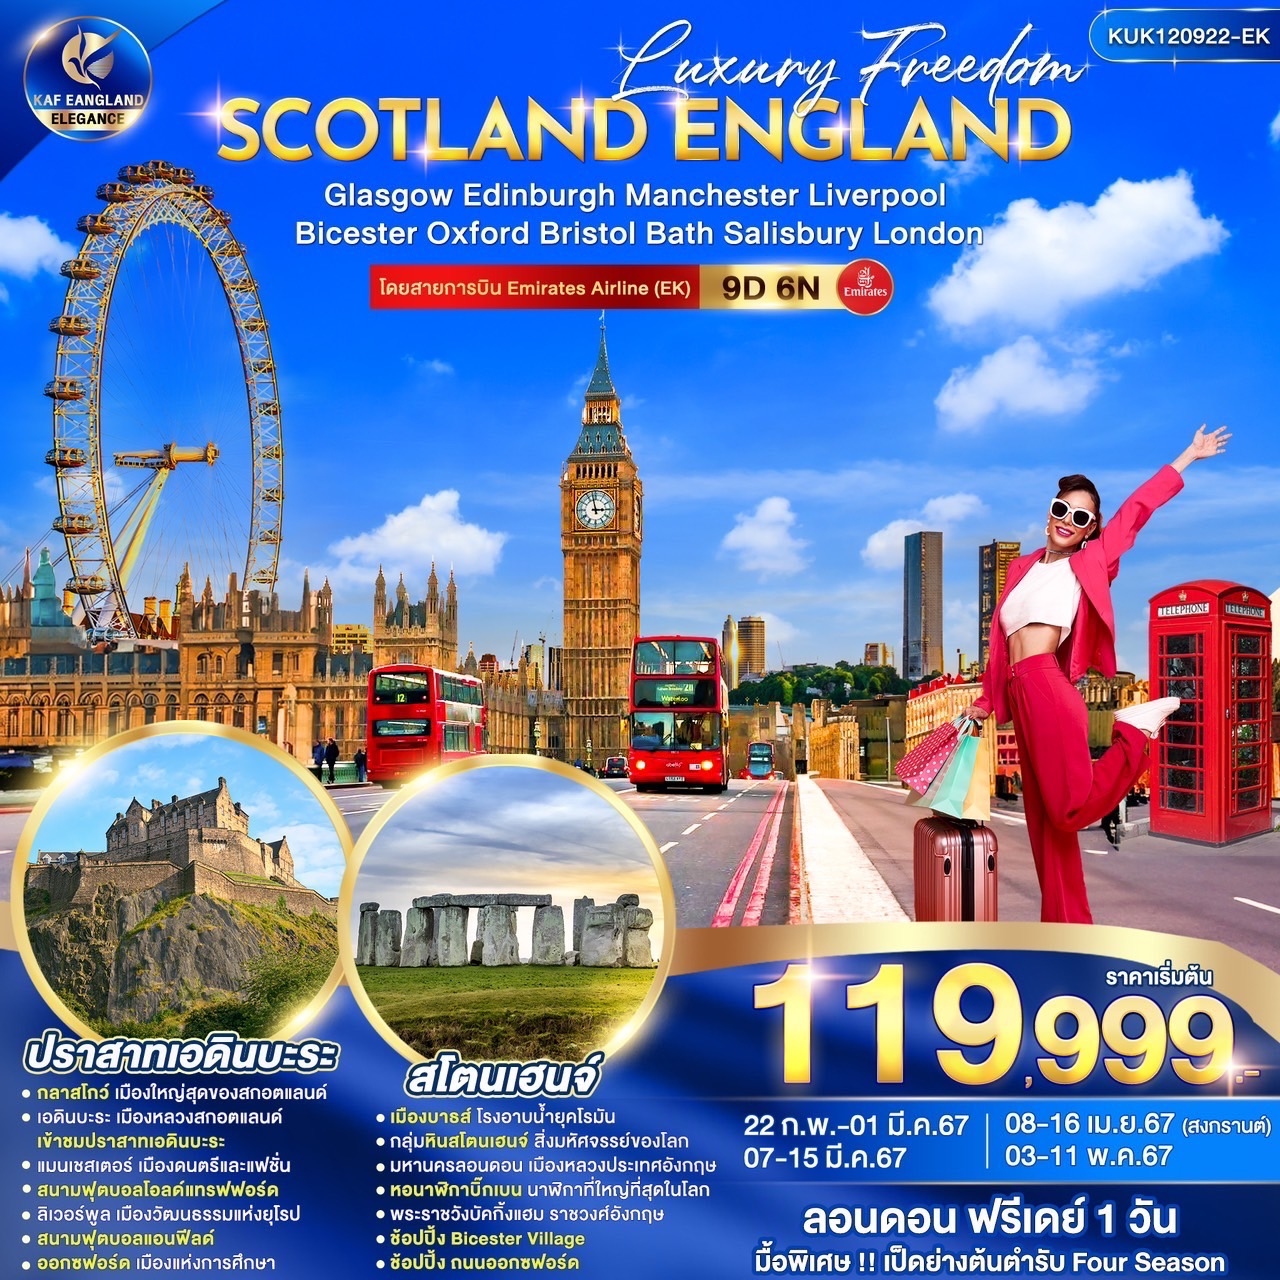 Luxury Freedom Scotland England 9D6N by EK